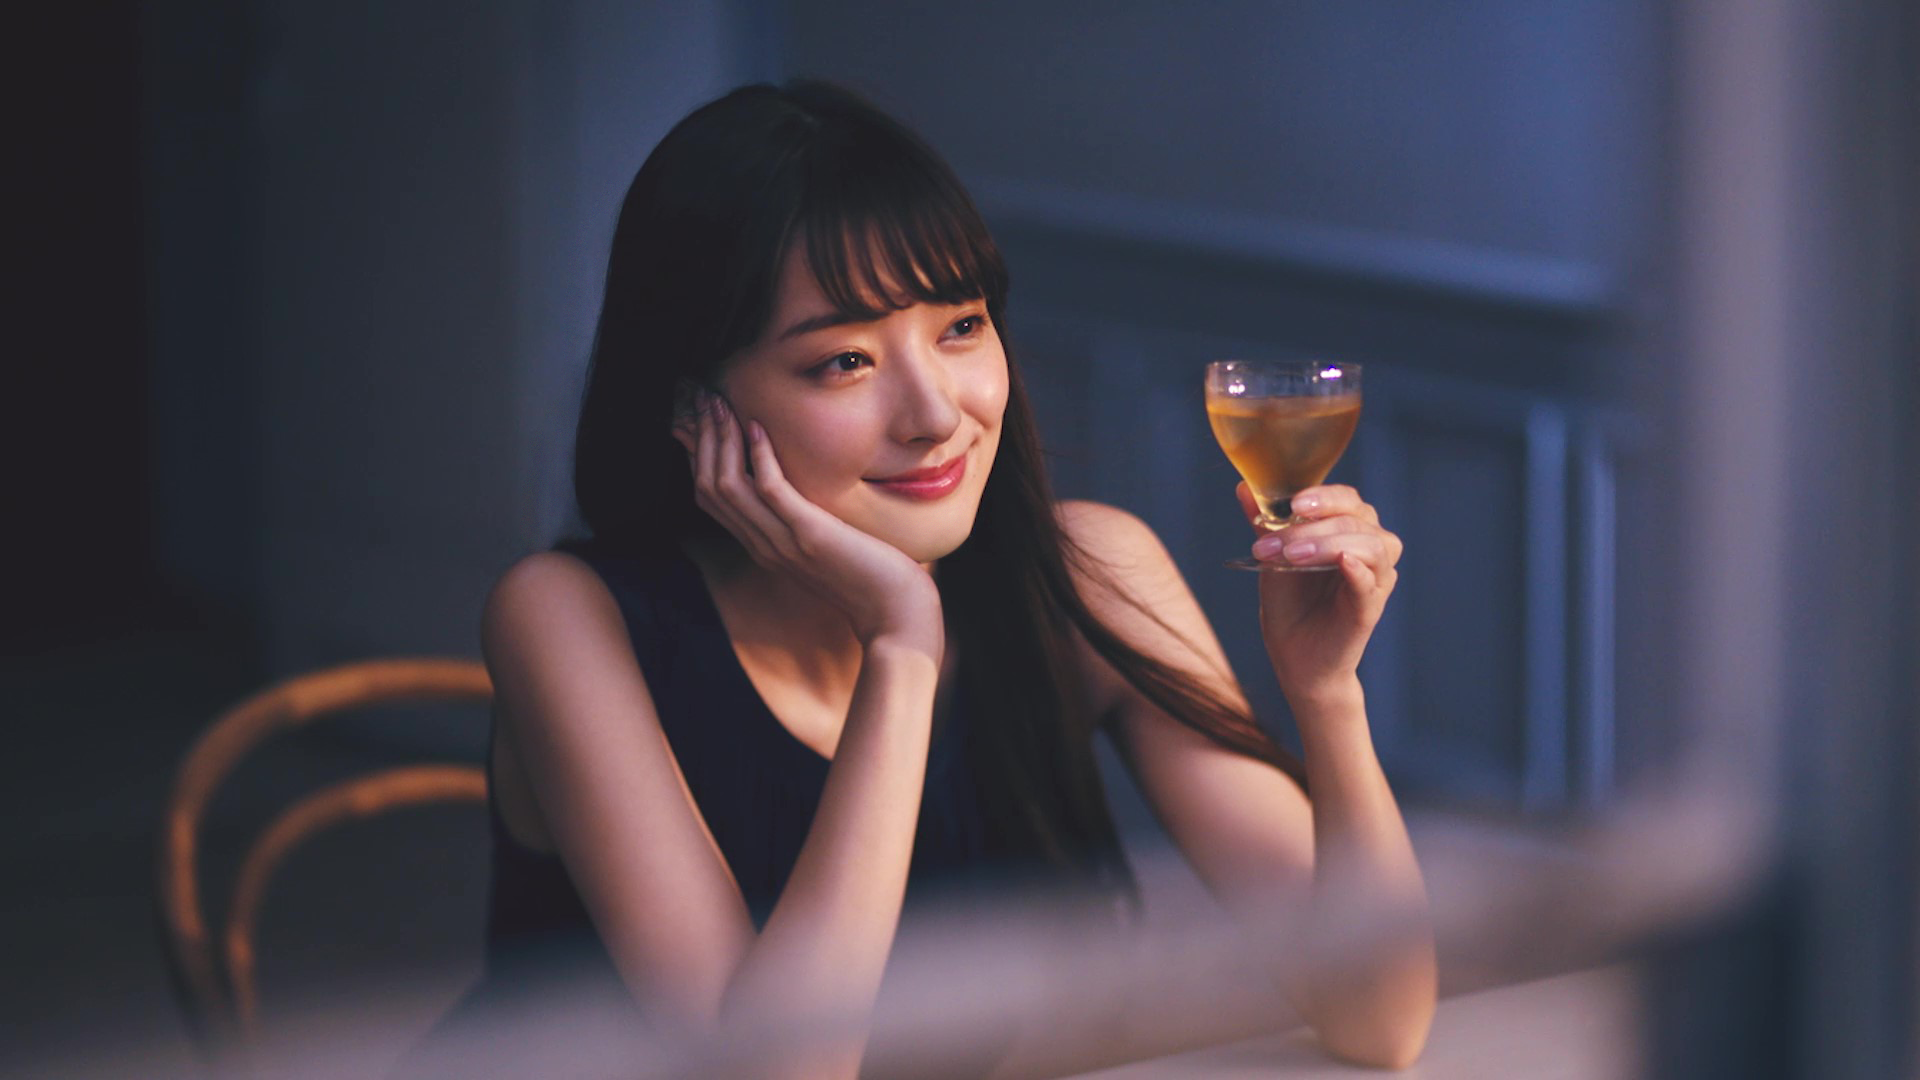 The Choya 新cm完成 新キャラクターに宮本茉由さんを起用 年8月21日 金 より全国オンエア開始 チョーヤ梅酒株式会社のプレスリリース